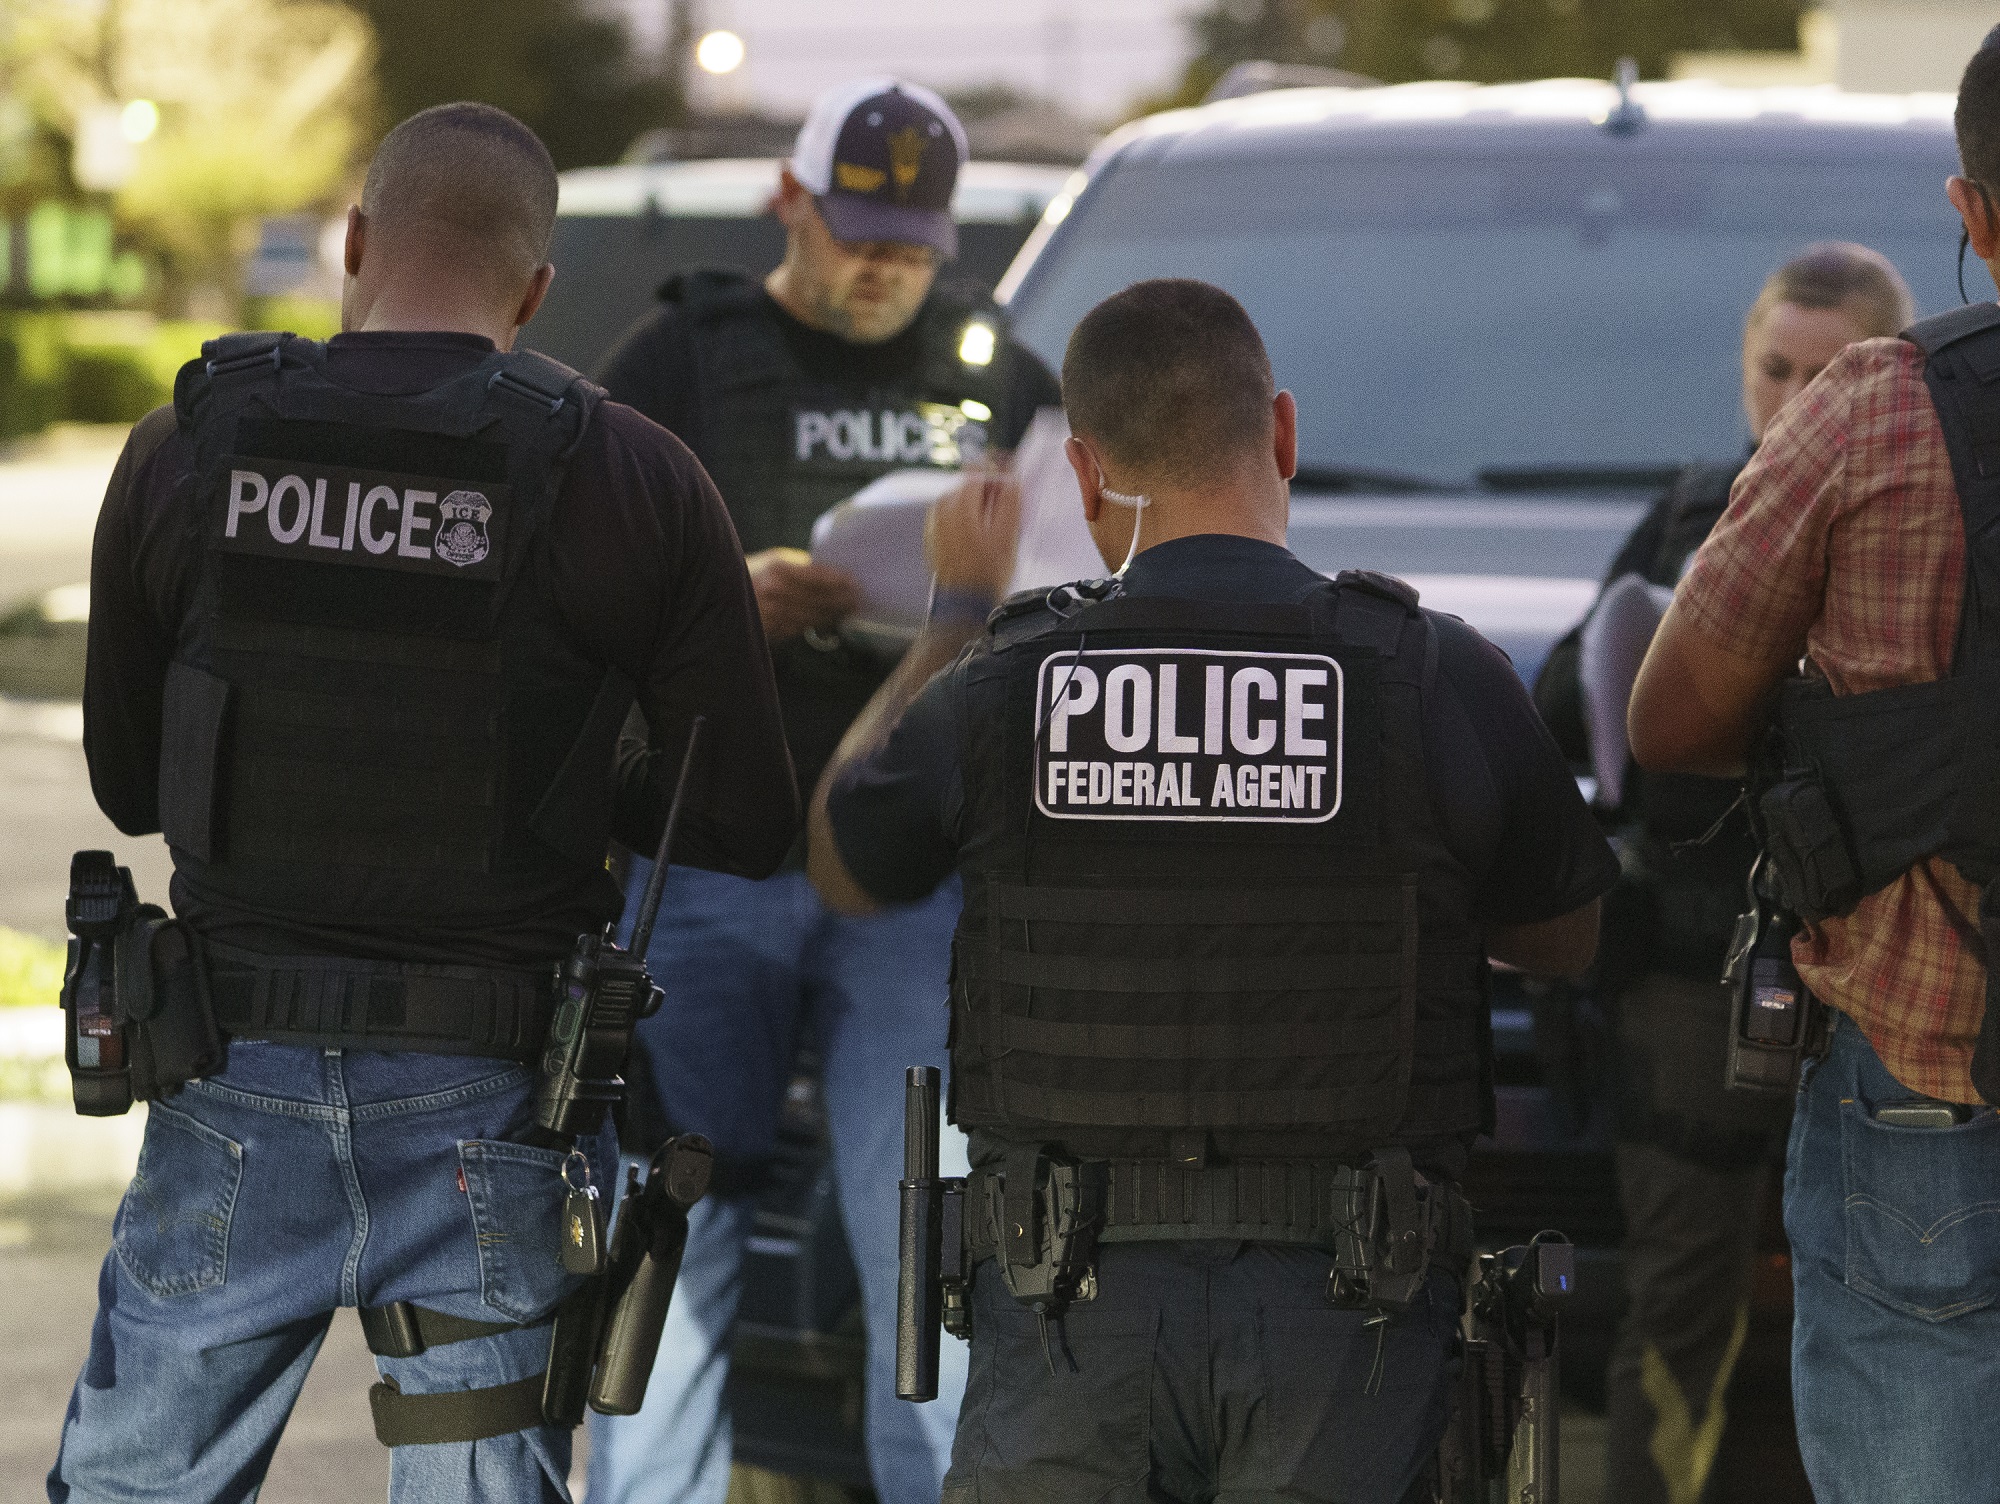 ΗΠΑ: Νέο δράμα με μετανάστες – 4 νεκροί σε τροχαίο μετά απο καταδίωξη λίγα 24ωρα μετά την τραγωδία στο Τέξας